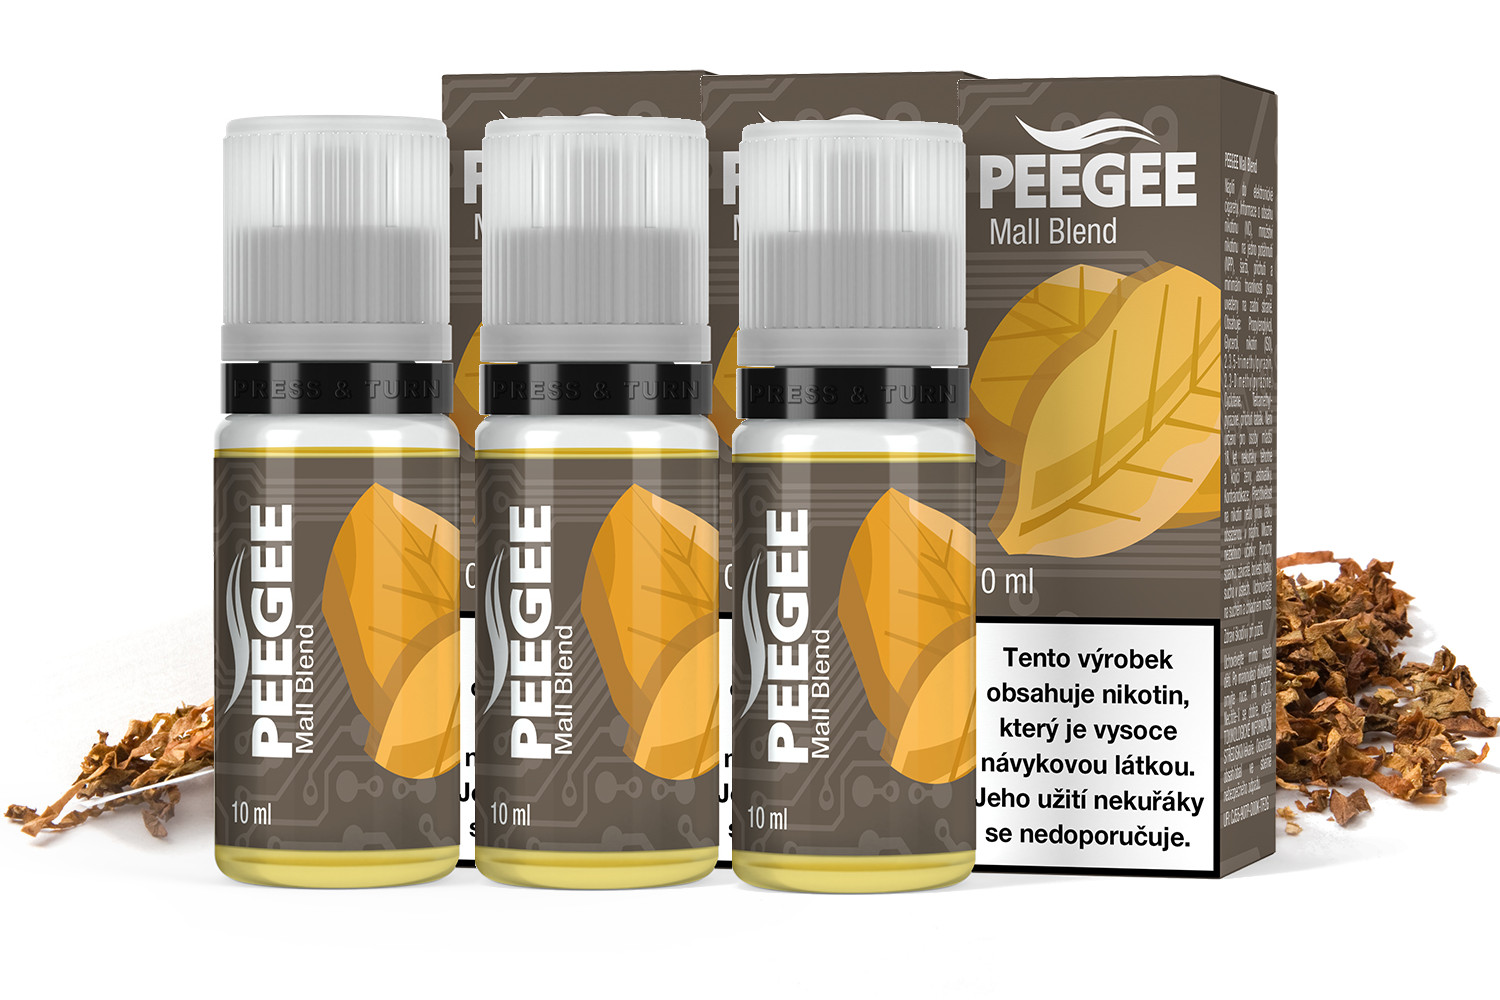 PEEGEE - Mall Blend 3x10ml Obsah nikotinu: 18mg